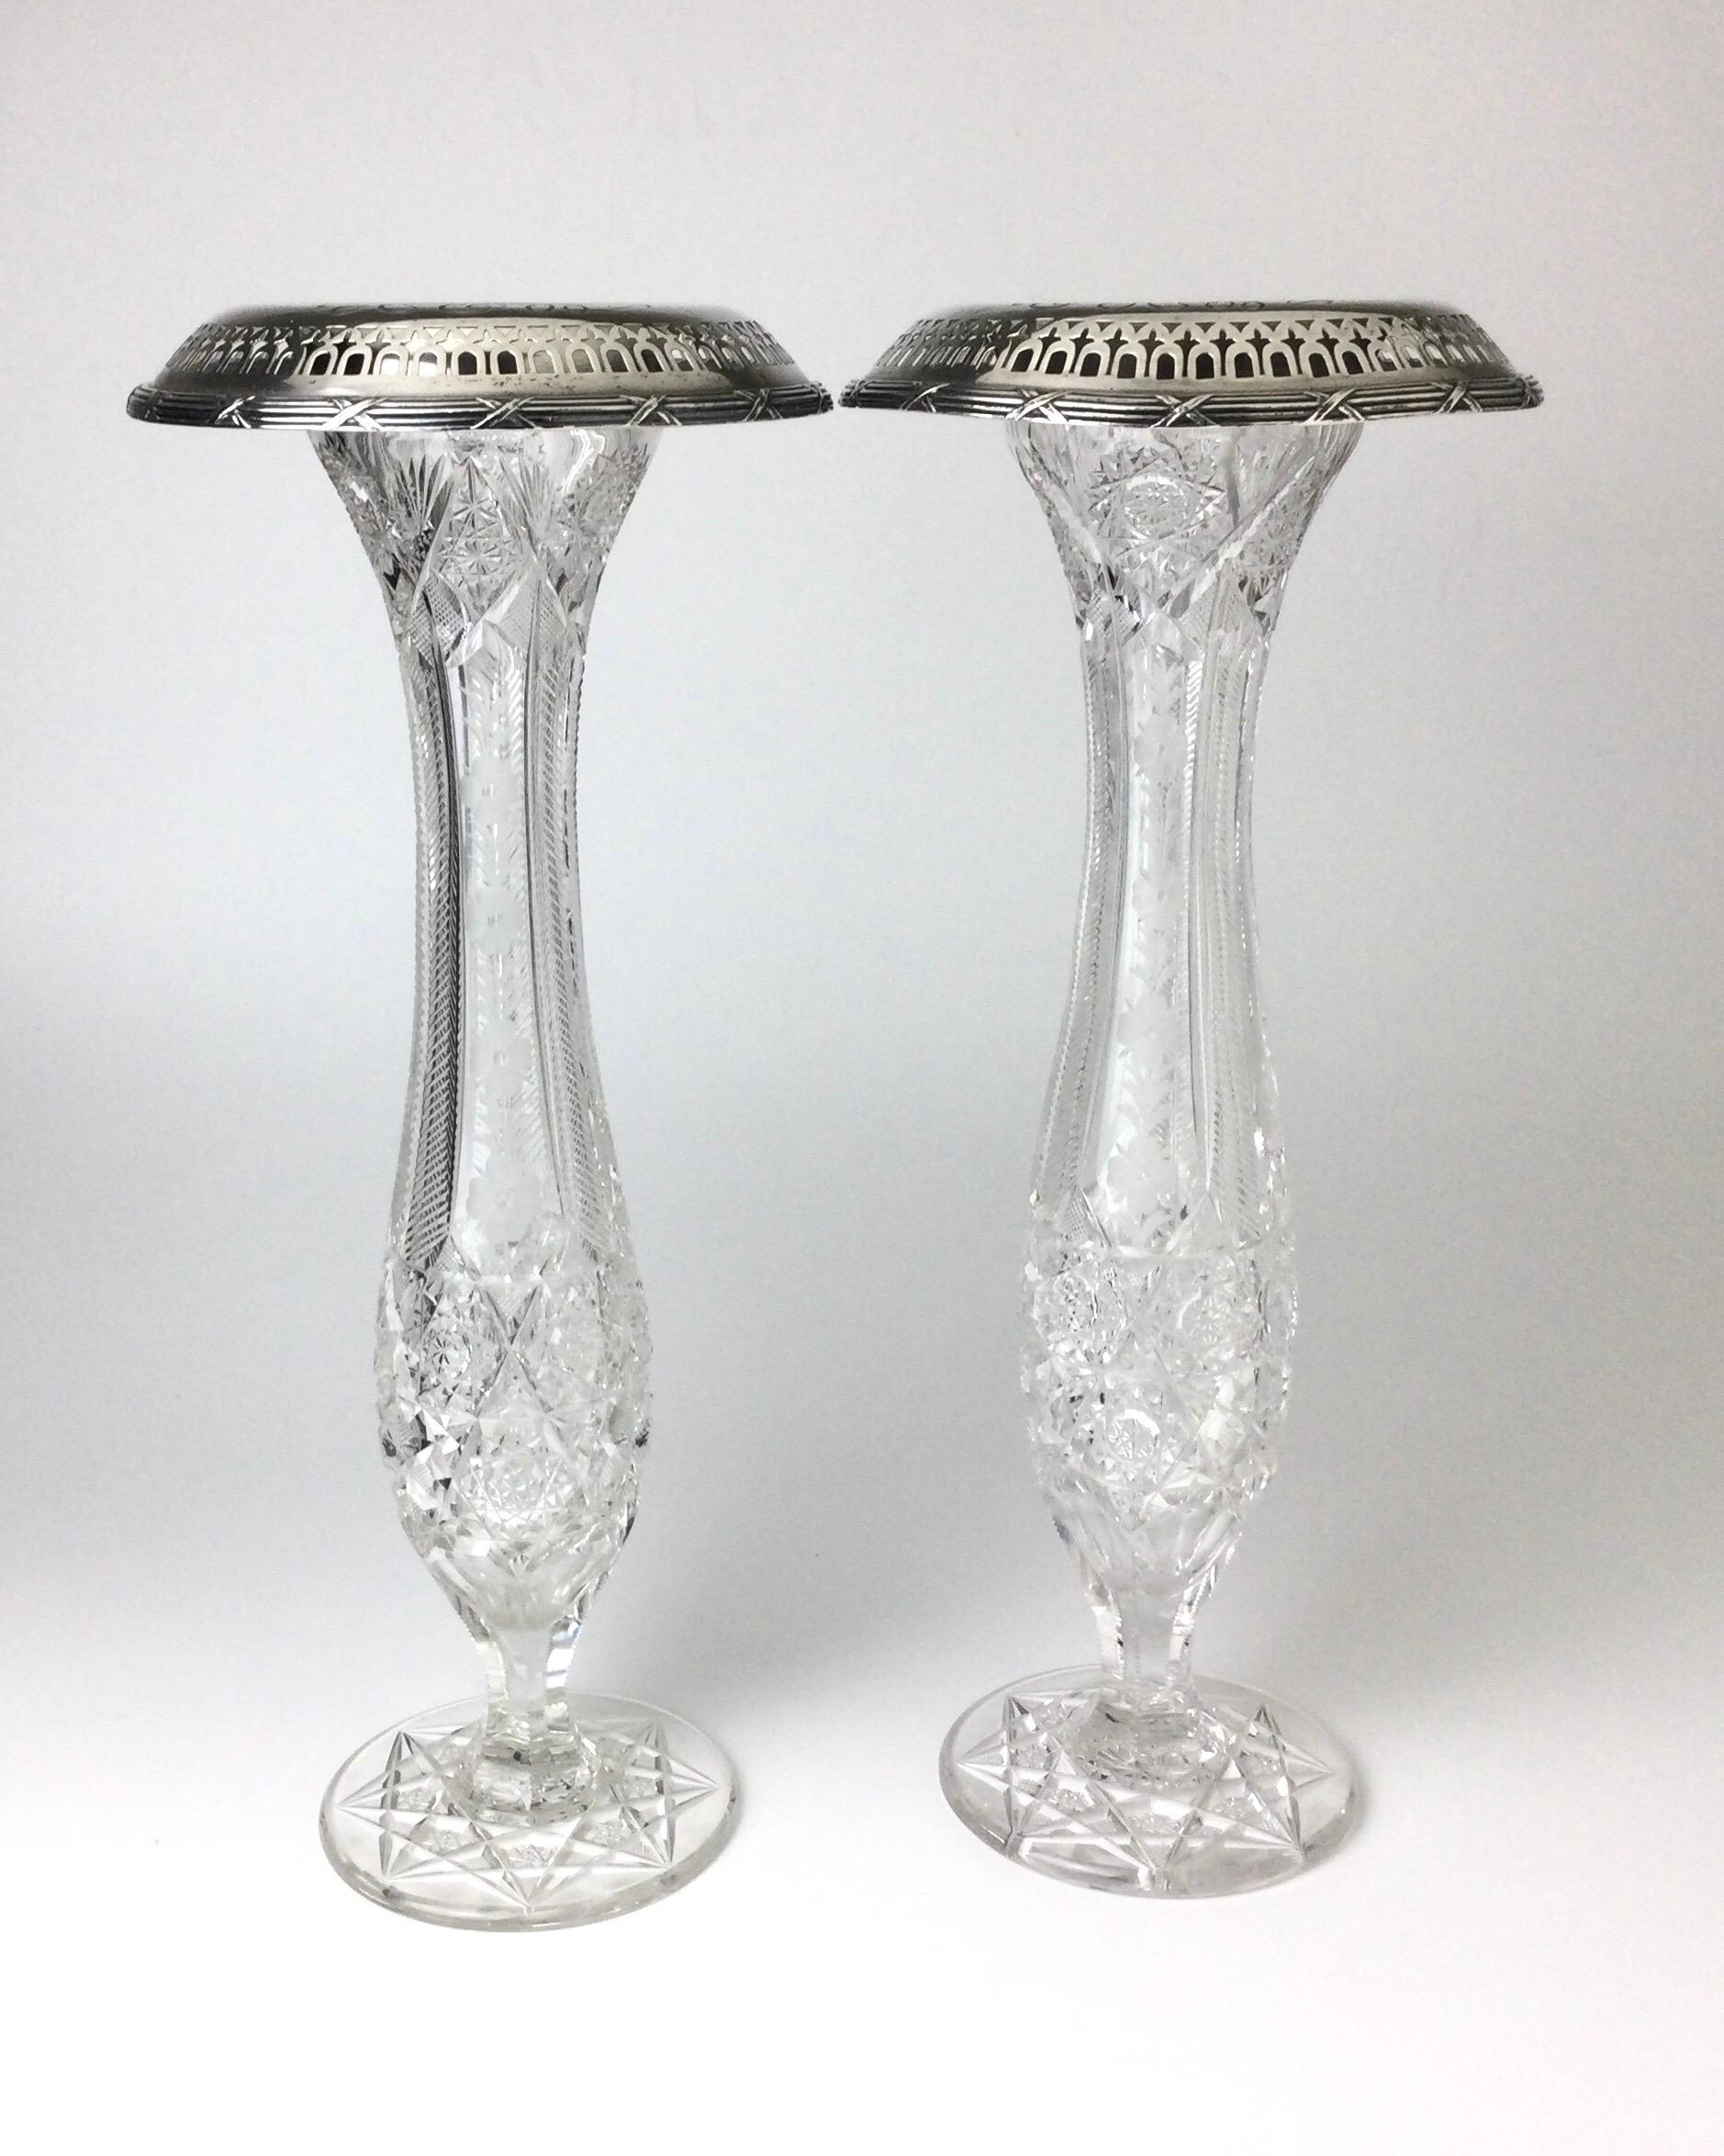 Paar antike amerikanische Vasen aus geschliffenem Brillantglas und Gorham-Sterlingsilber. Die Vasen sind jeweils 16 1/2